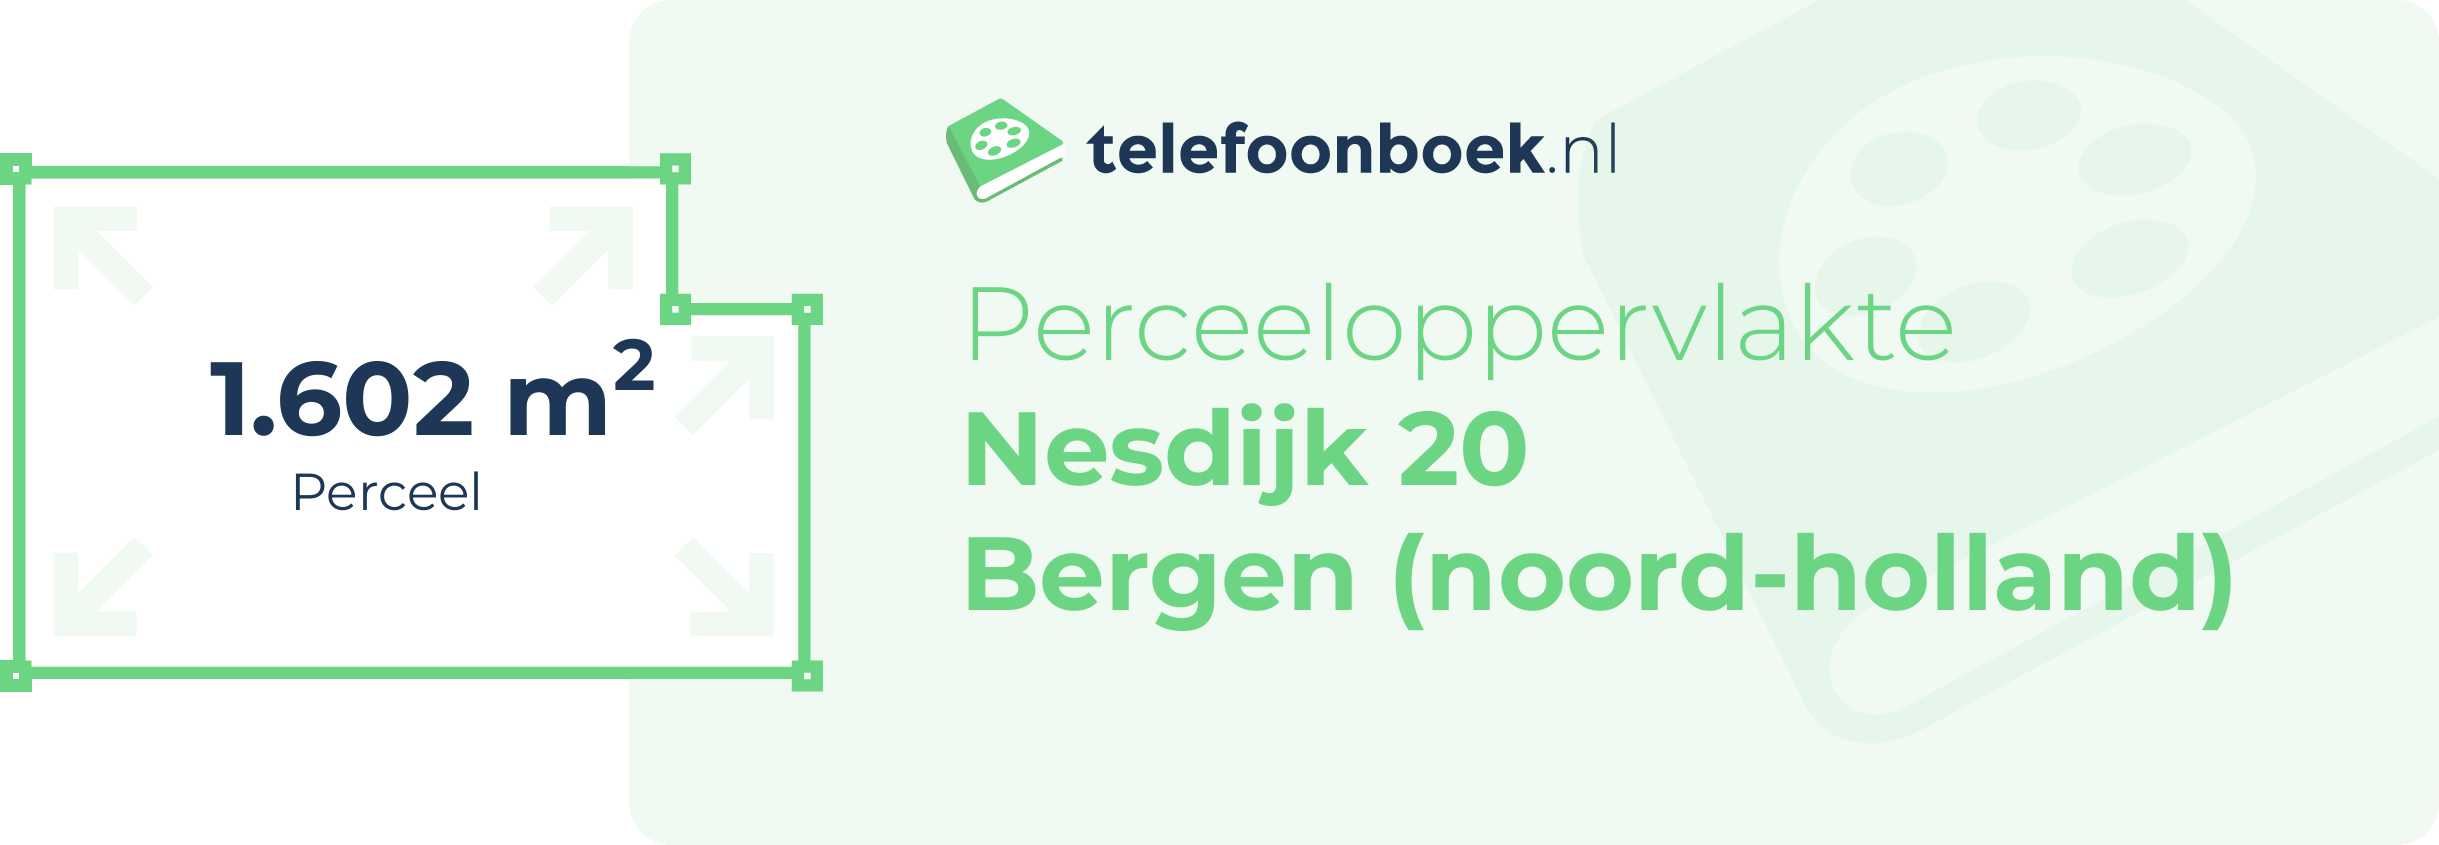 Perceeloppervlakte Nesdijk 20 Bergen (Noord-Holland)